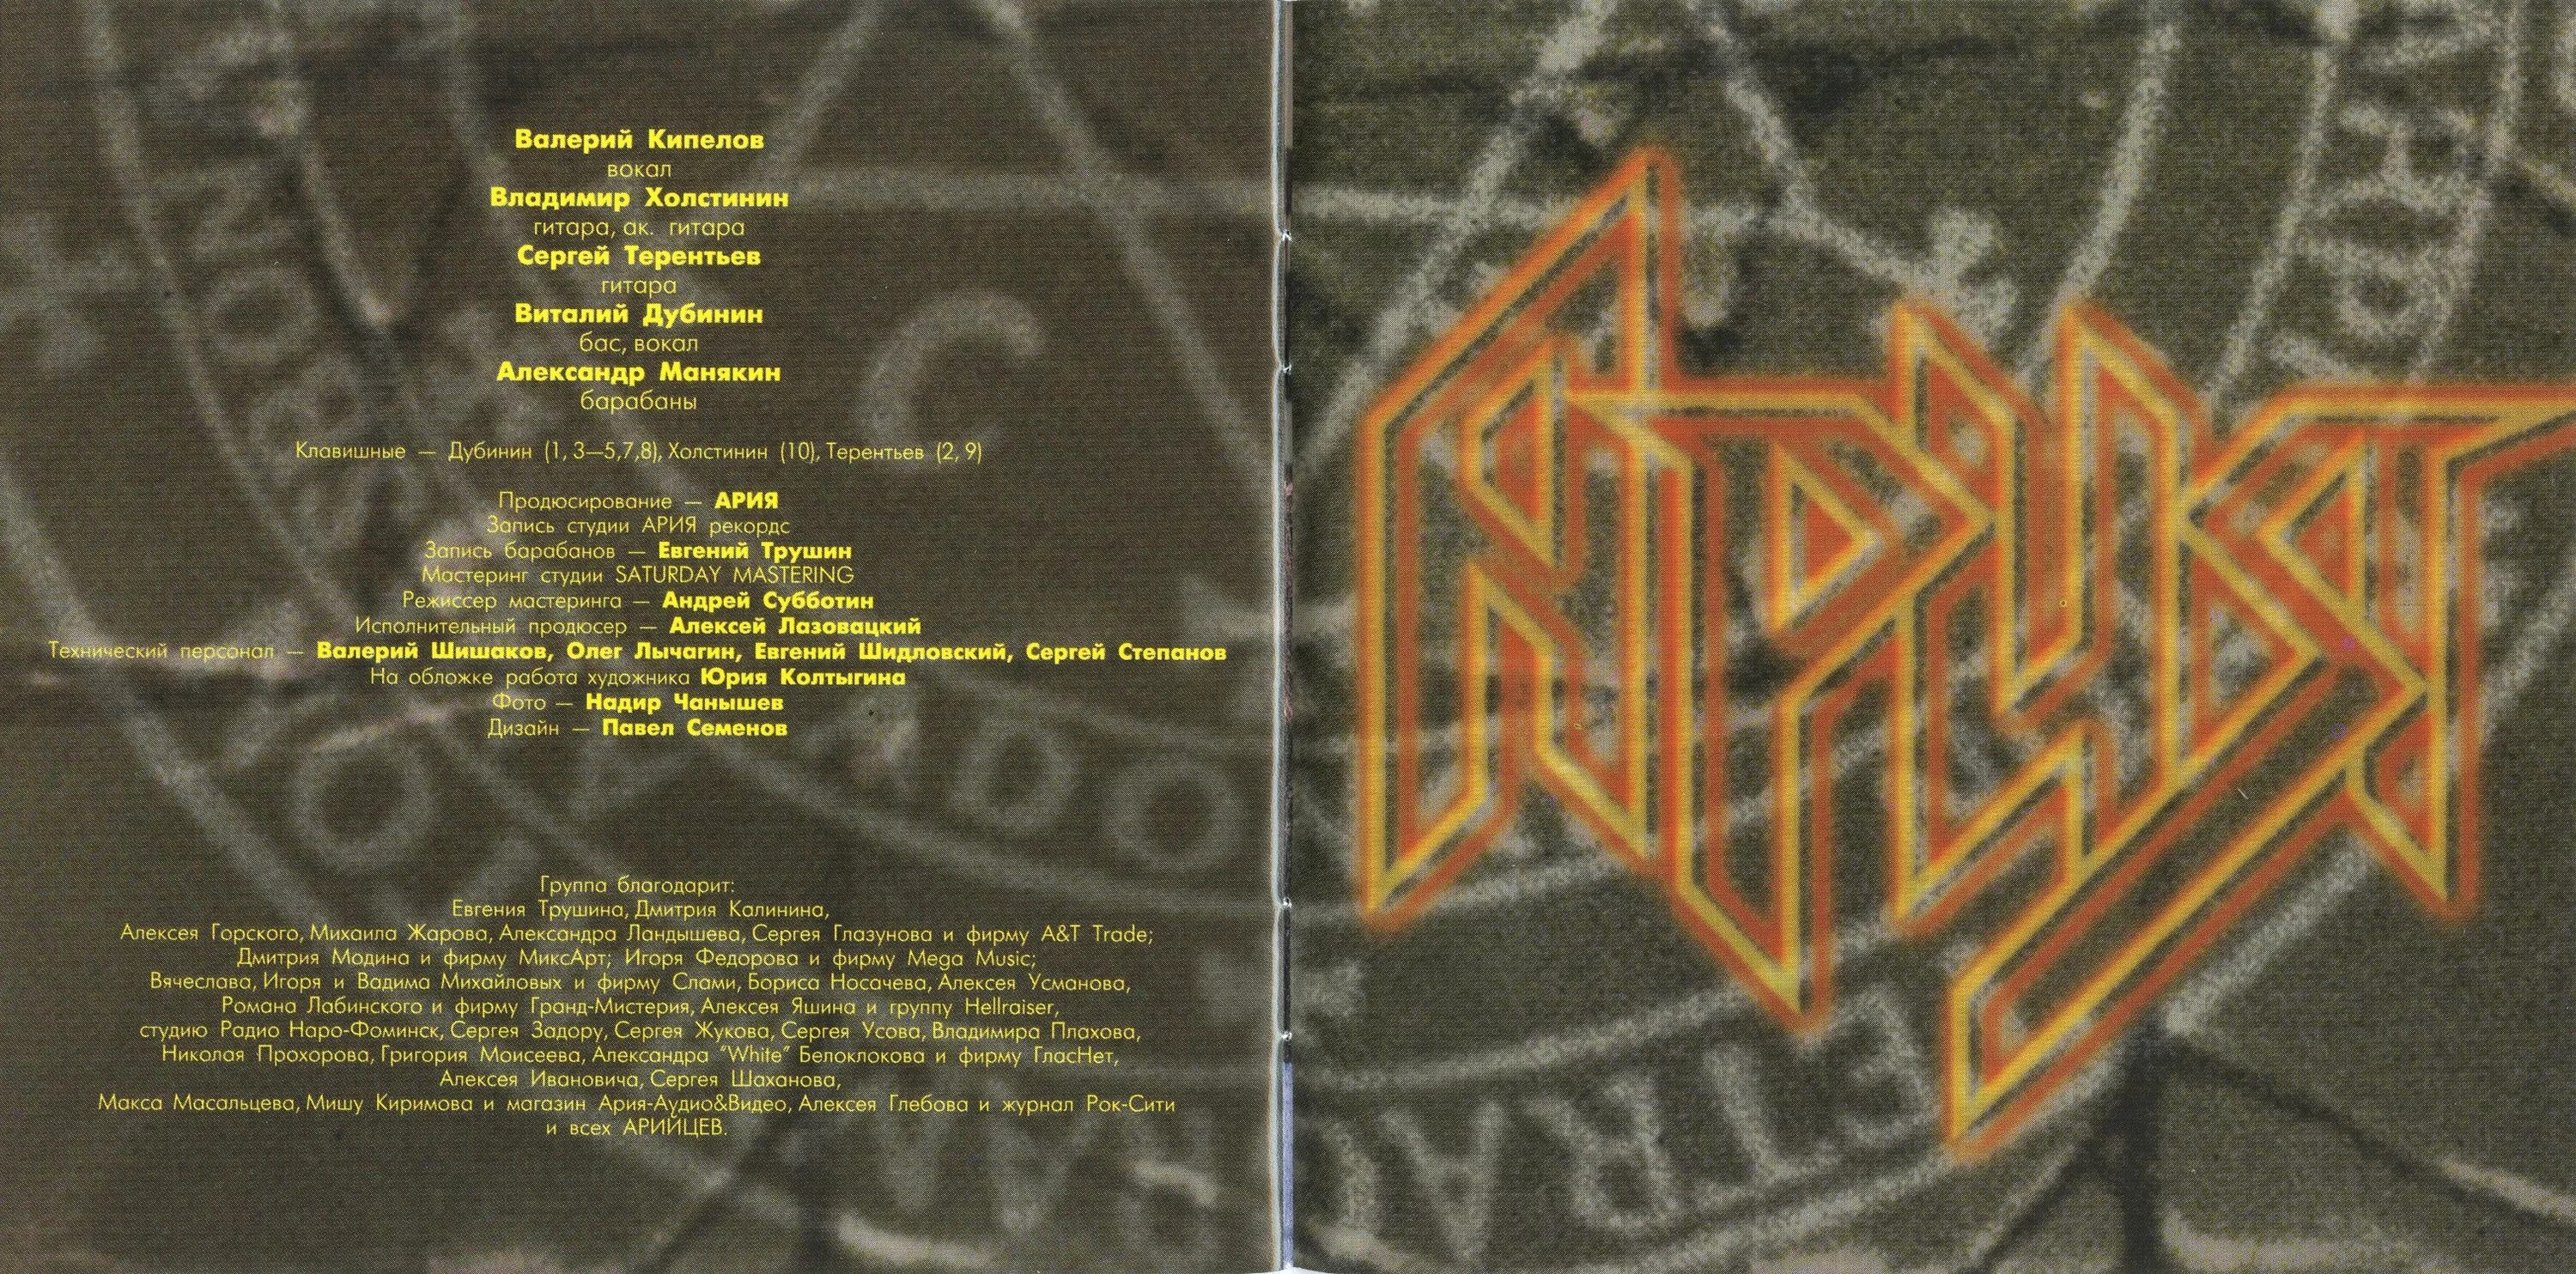 Ария сила зла. Обложка альбома Генератор зла группы Ария. Ария группа 1998. Ария 1998 Генератор зла.